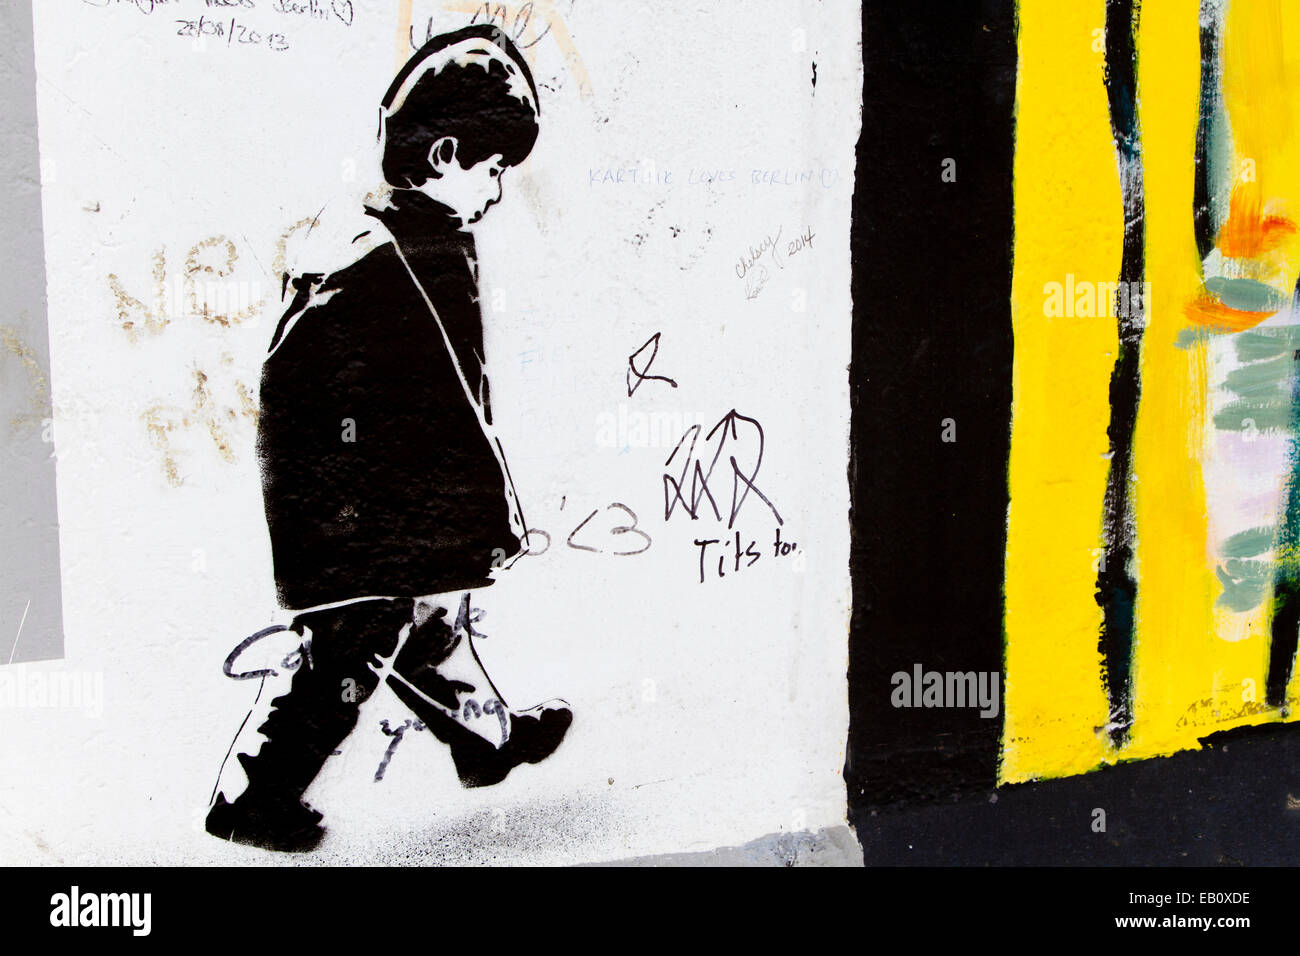 Berlin Wall Street Art Graffiti Banksy style boy Foto de stock